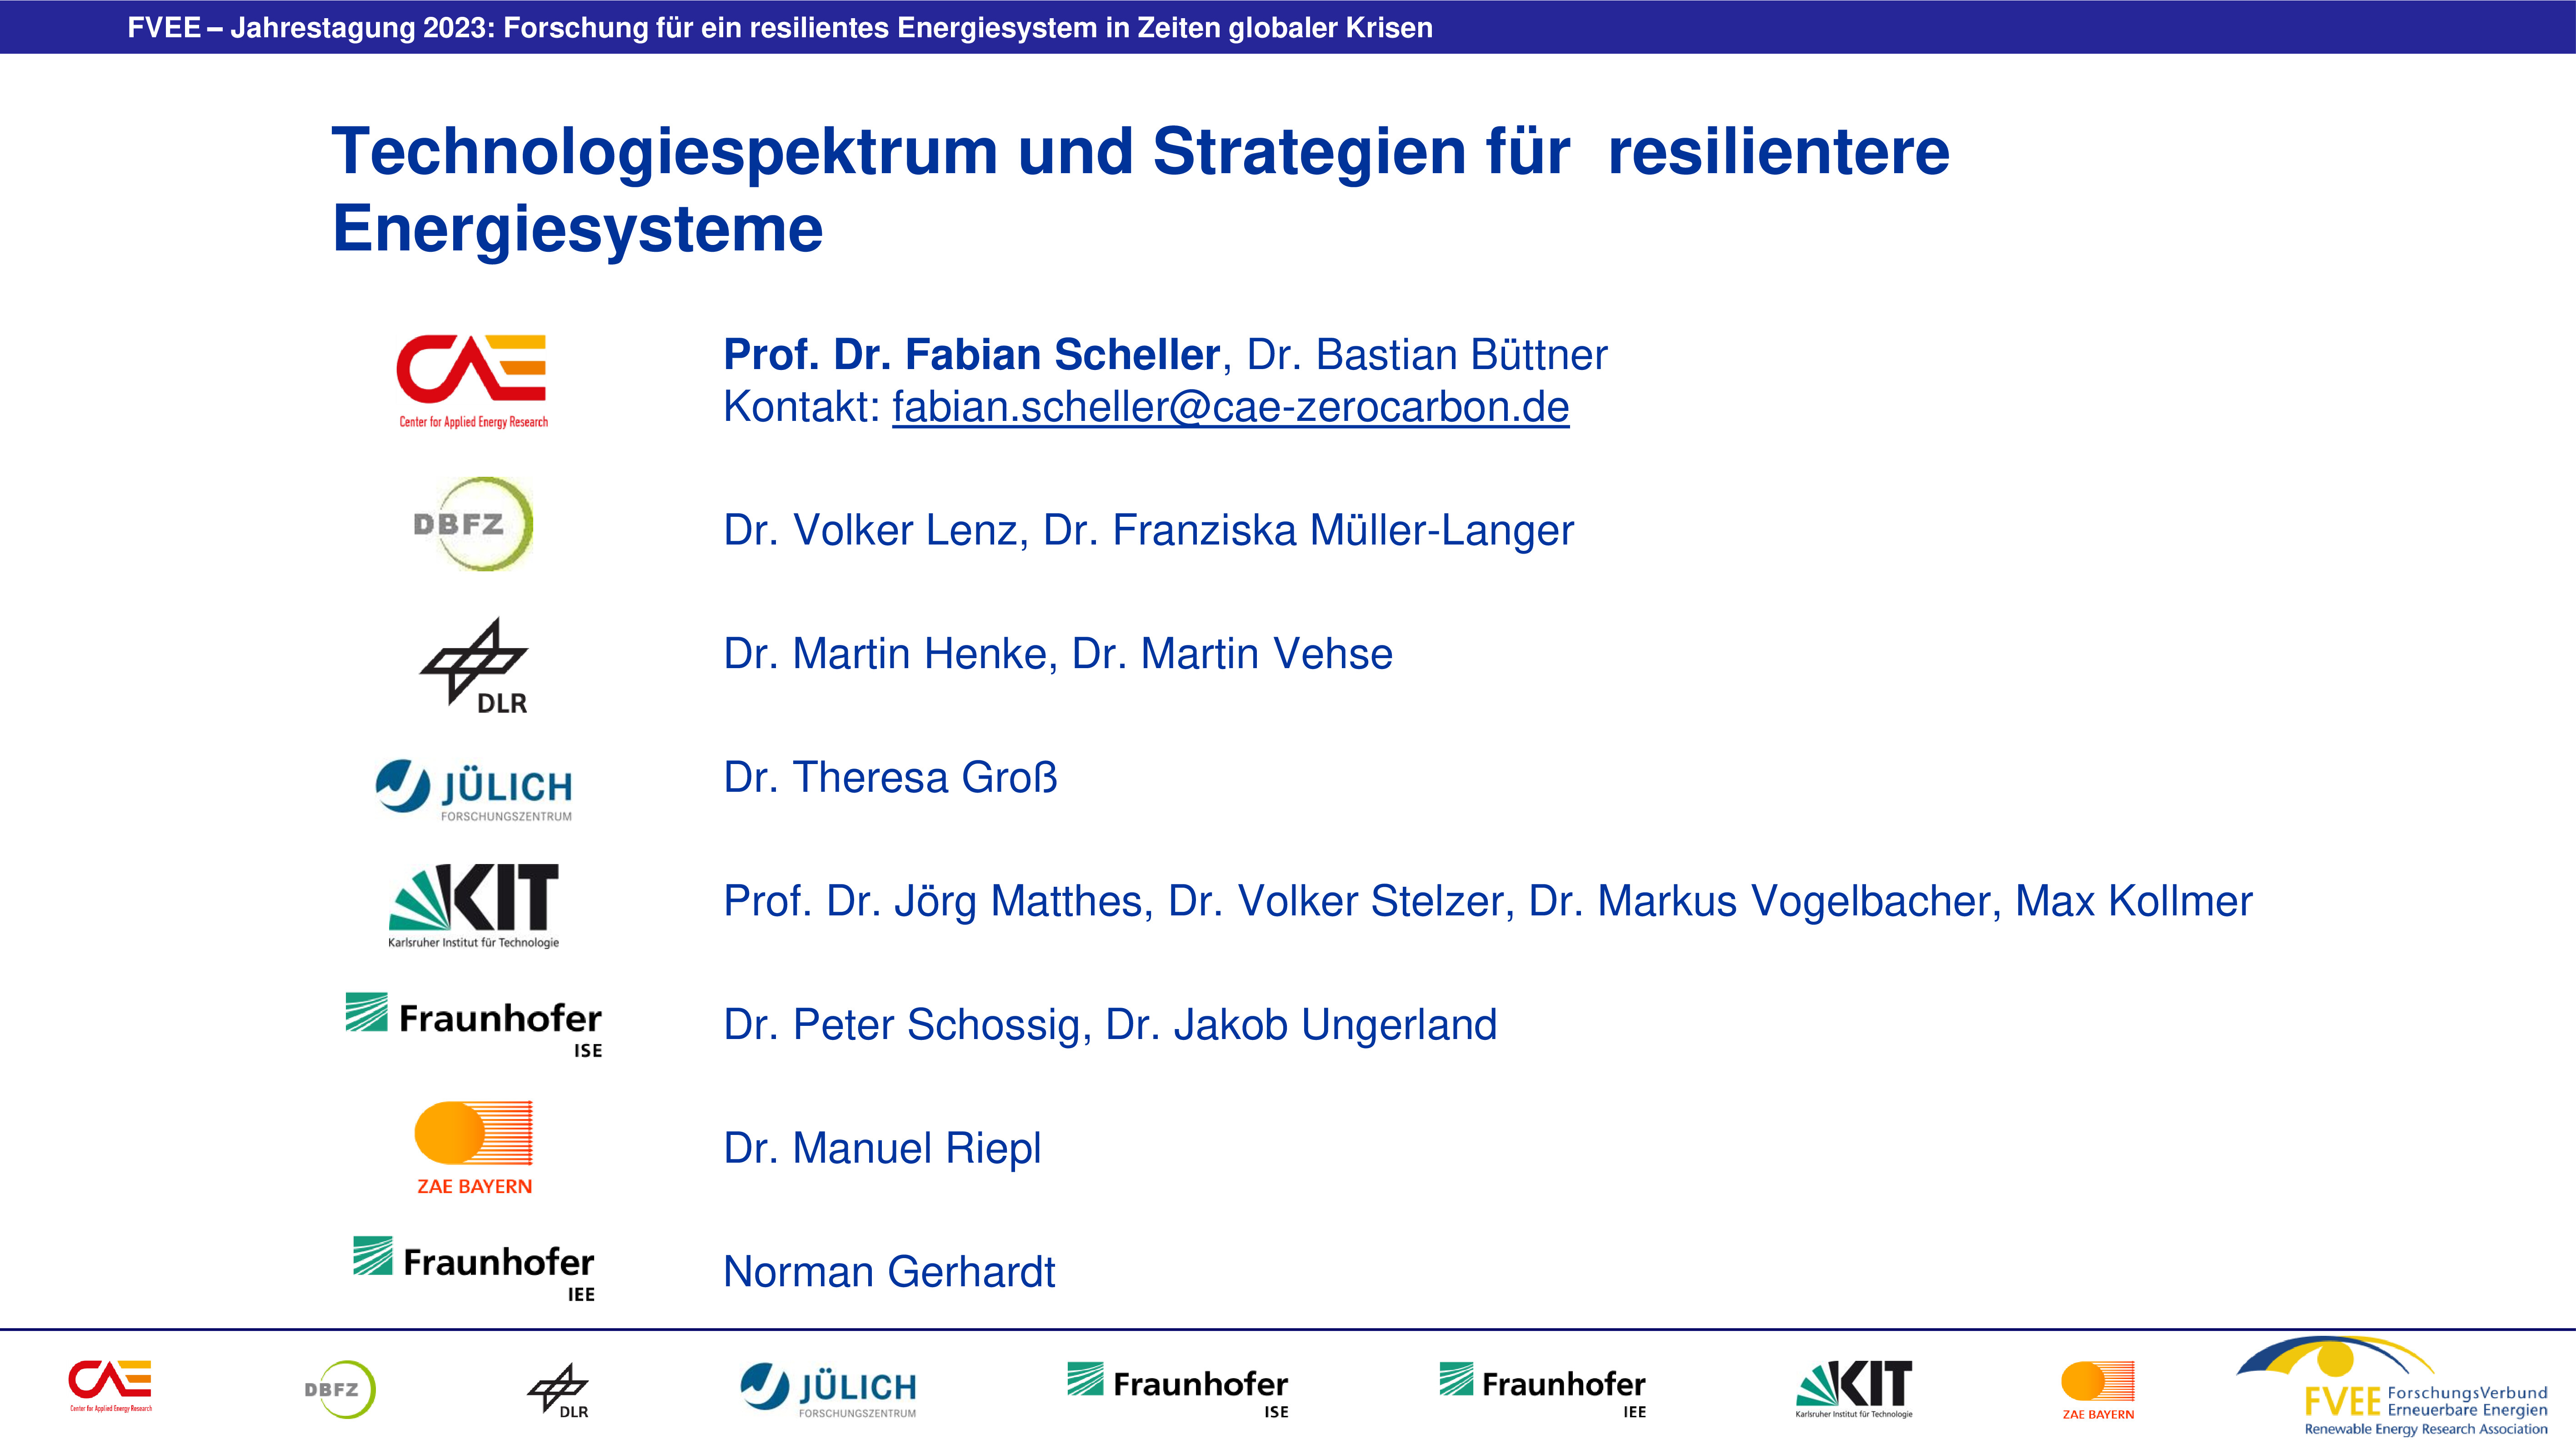 Technologiespektrum und Strategien für resilientere Energiesysteme (Scheller - CAE)